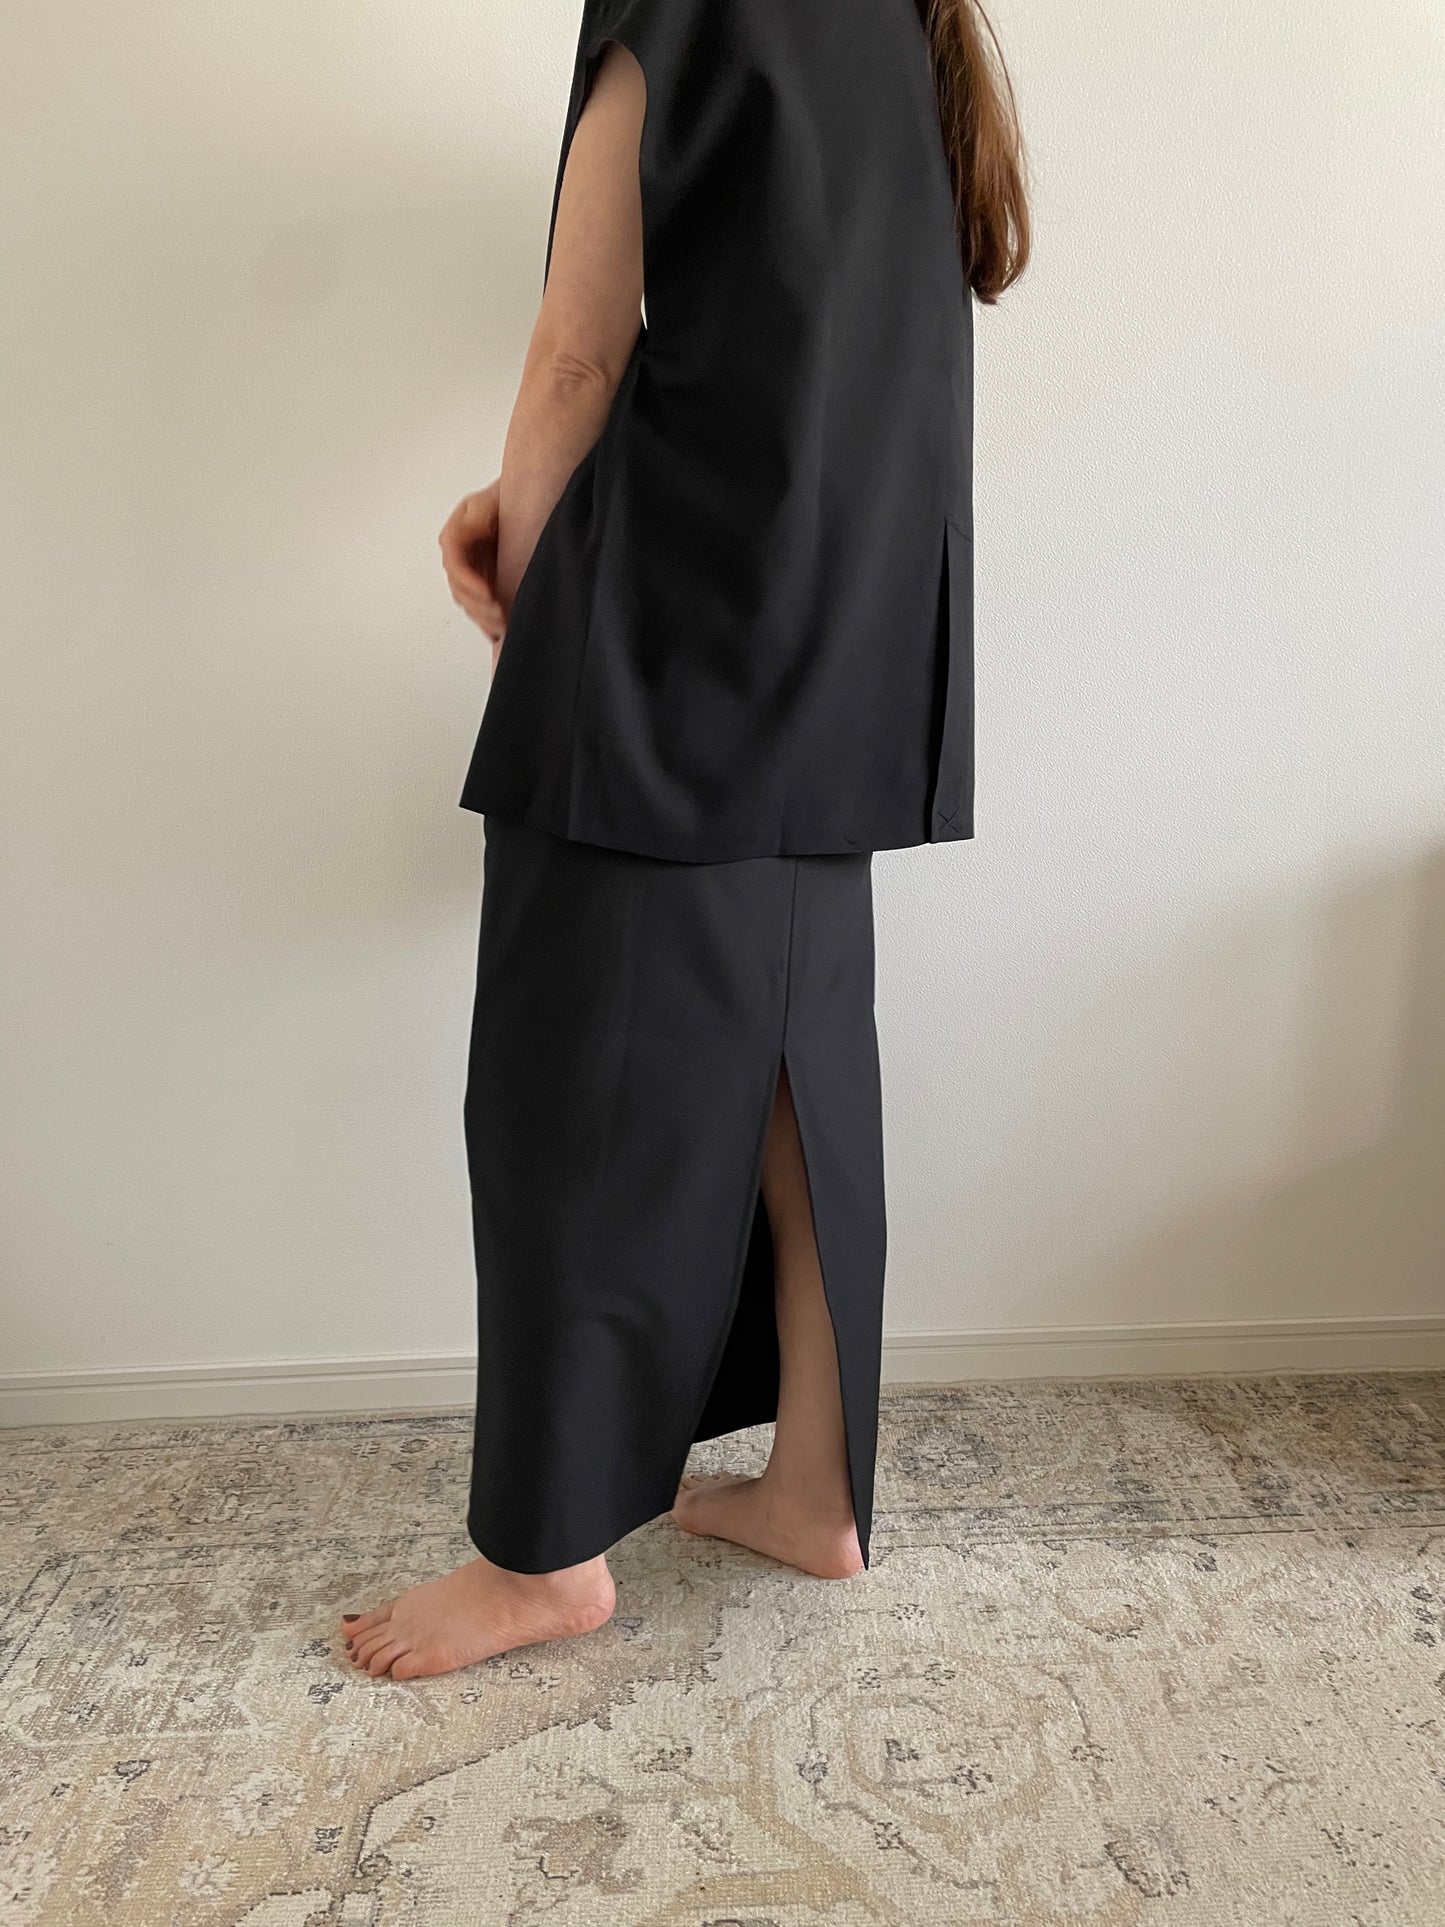 I line silhouette skirt